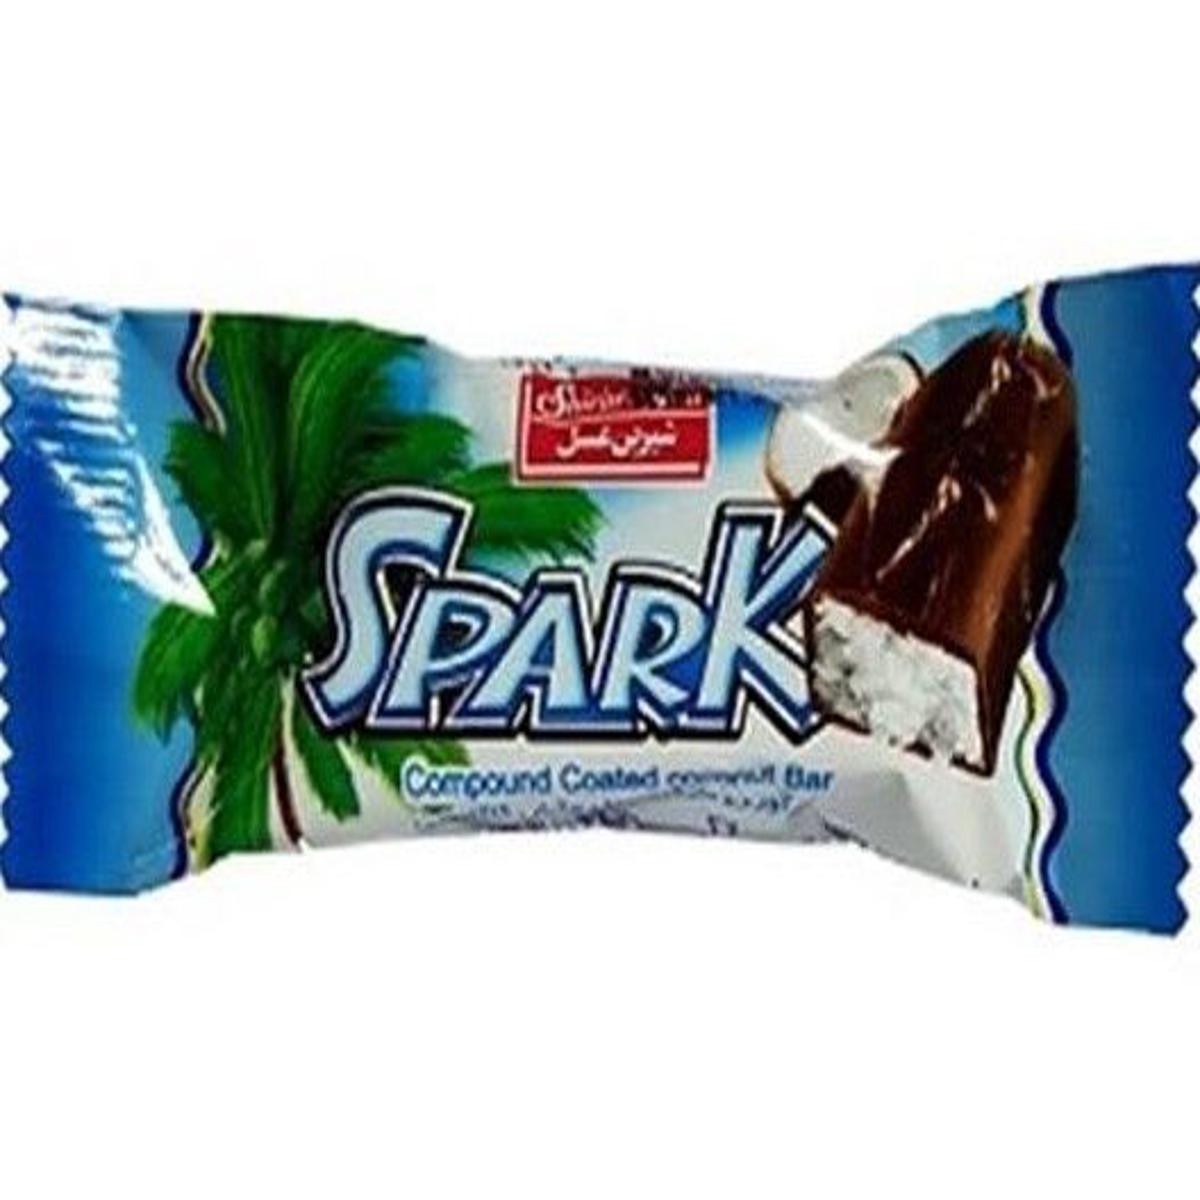 Spark Coconut Chocolate Bar (30 Pieces)